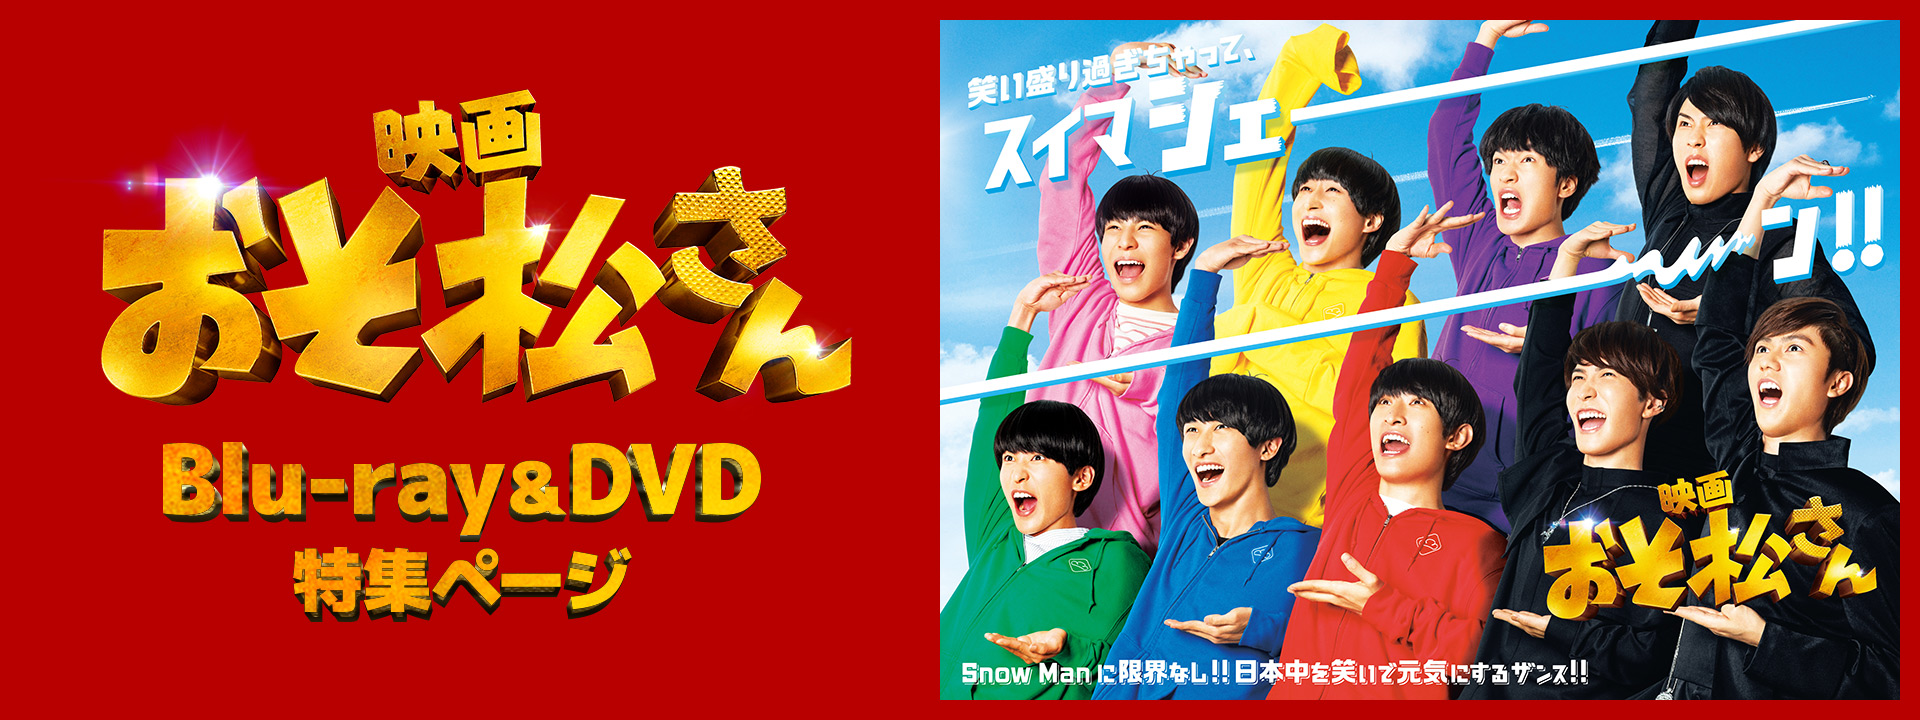 映画『おそ松さん』 Blu-ray&DVD 特集ページ